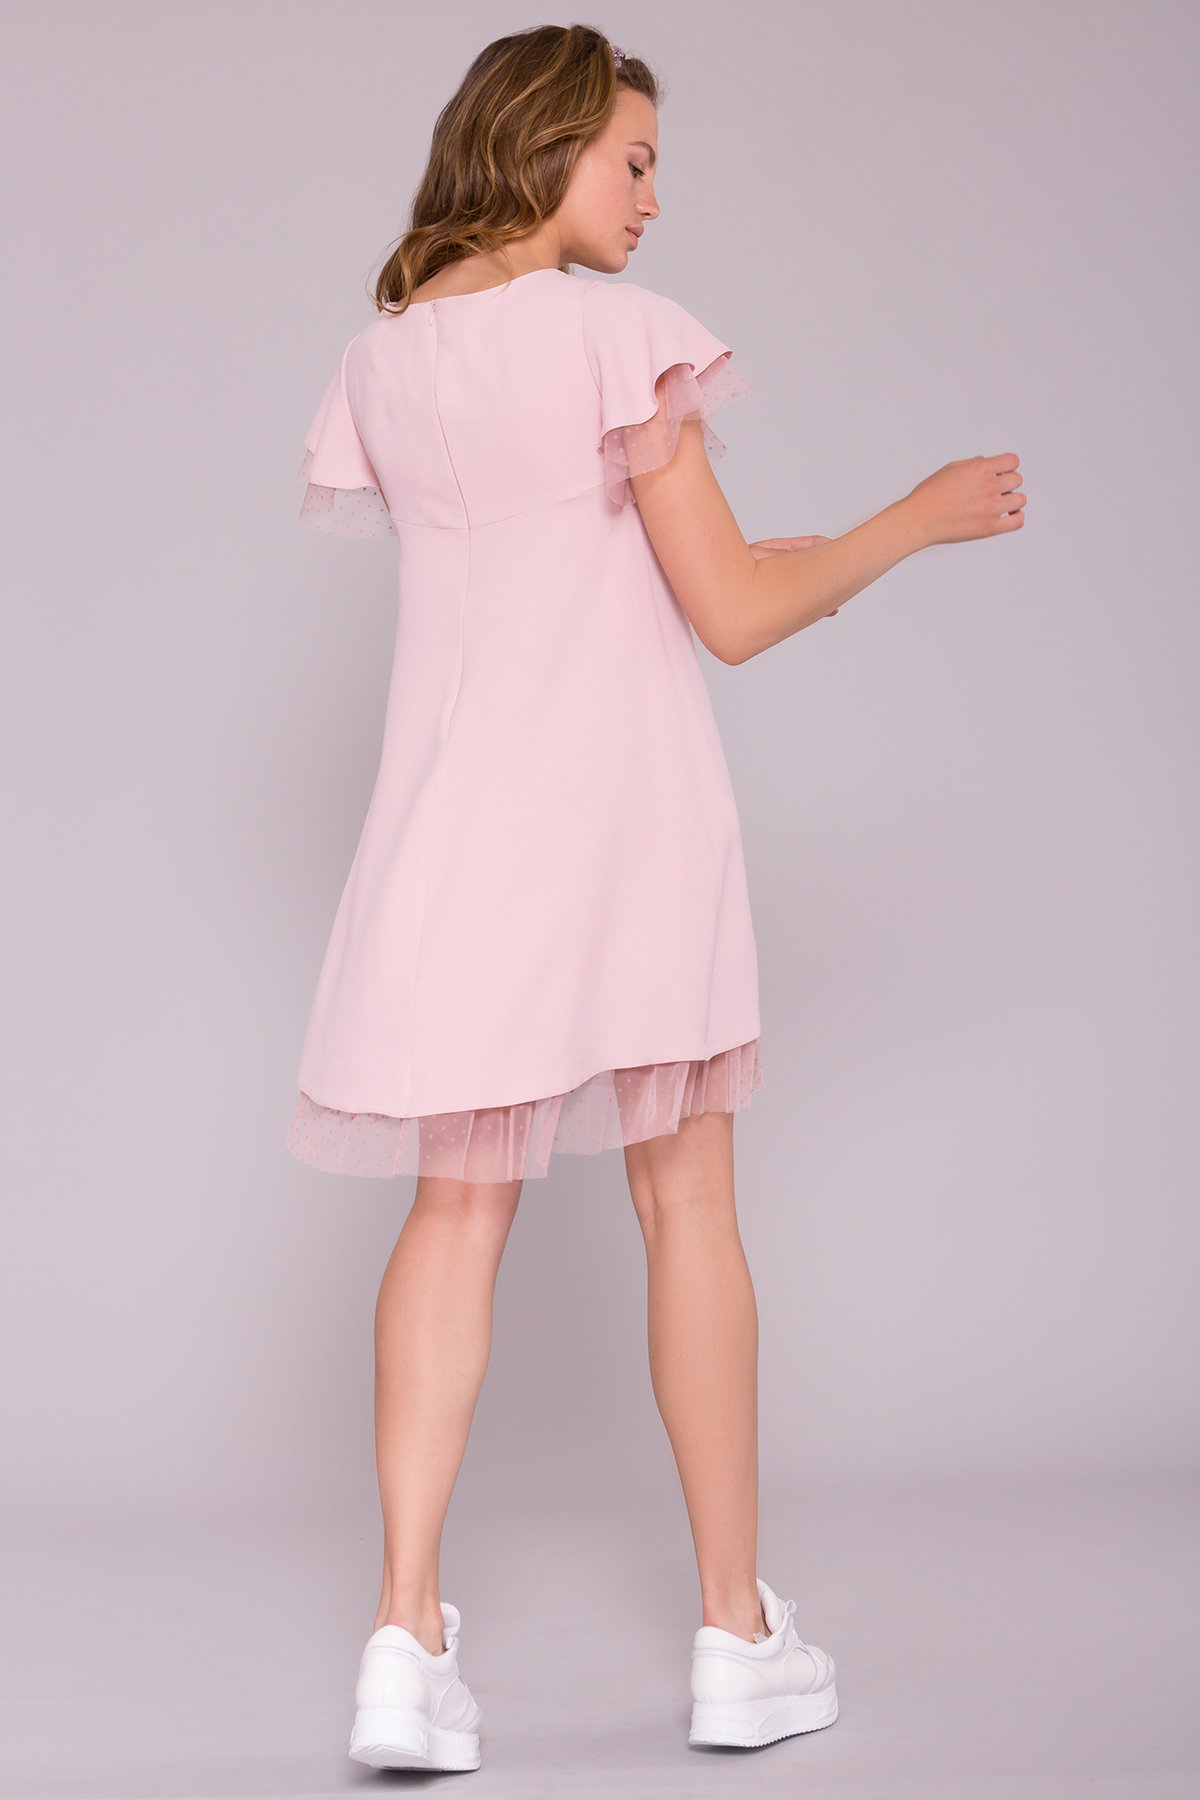 Платье Романтик 7154 АРТ. 42564 Цвет: Розовый 16 - фото 2, интернет магазин tm-modus.ru